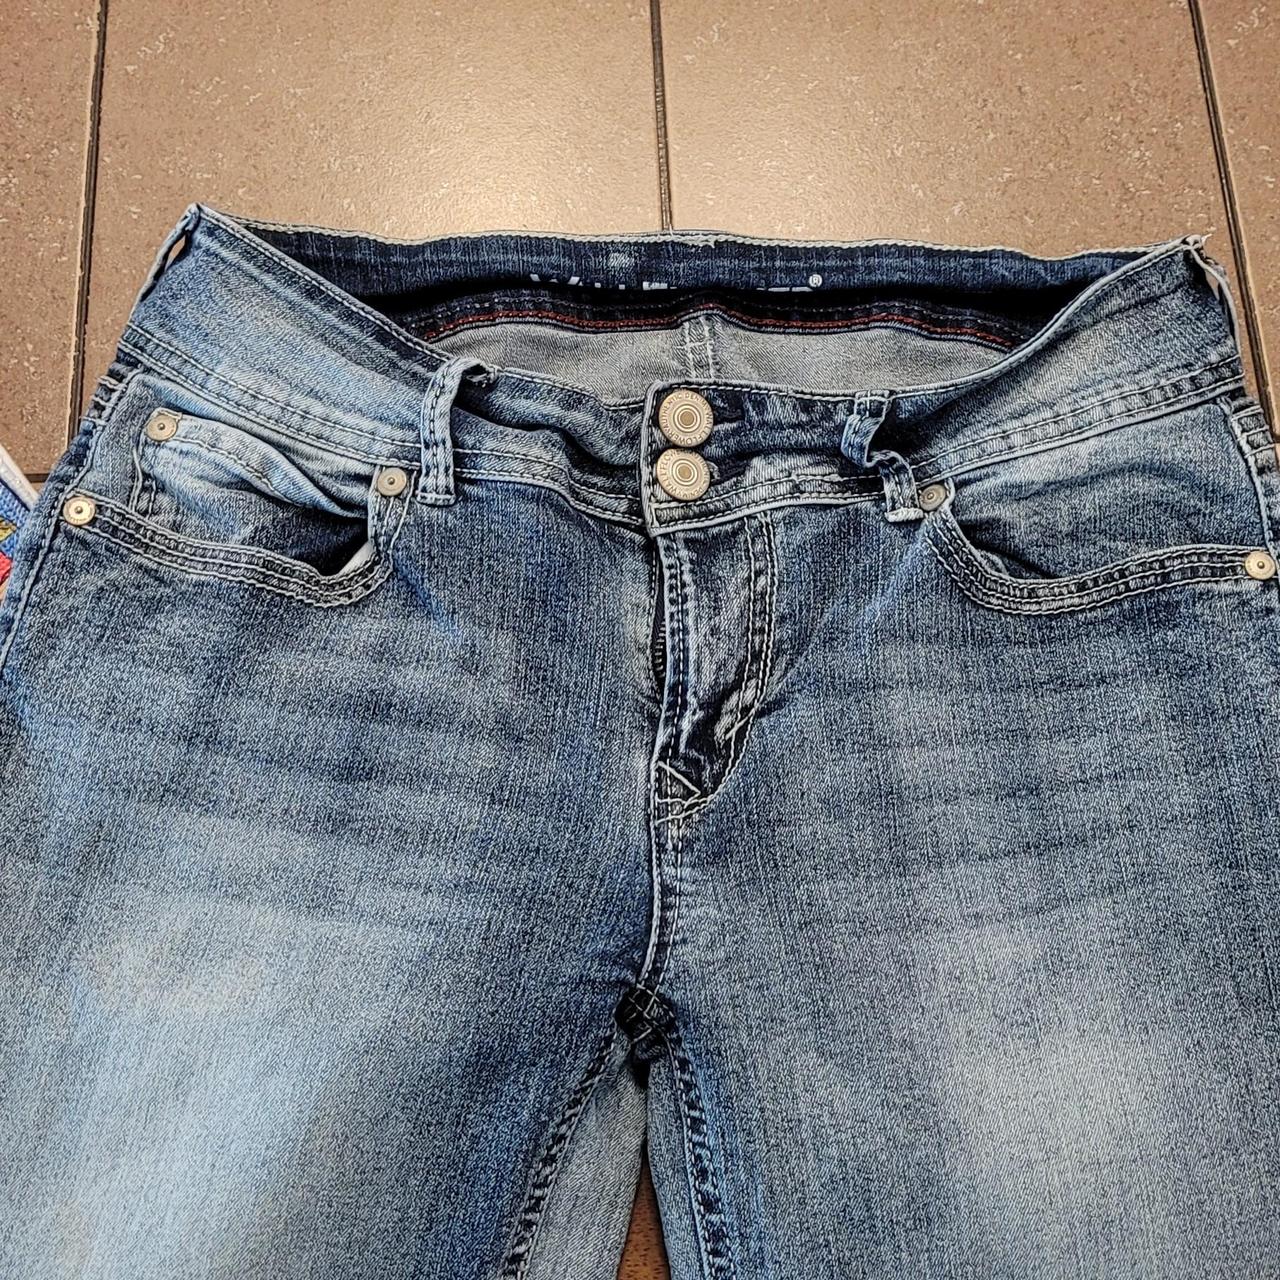 Wallflower brand jeans Bootcut Size 7 regular The... - Depop